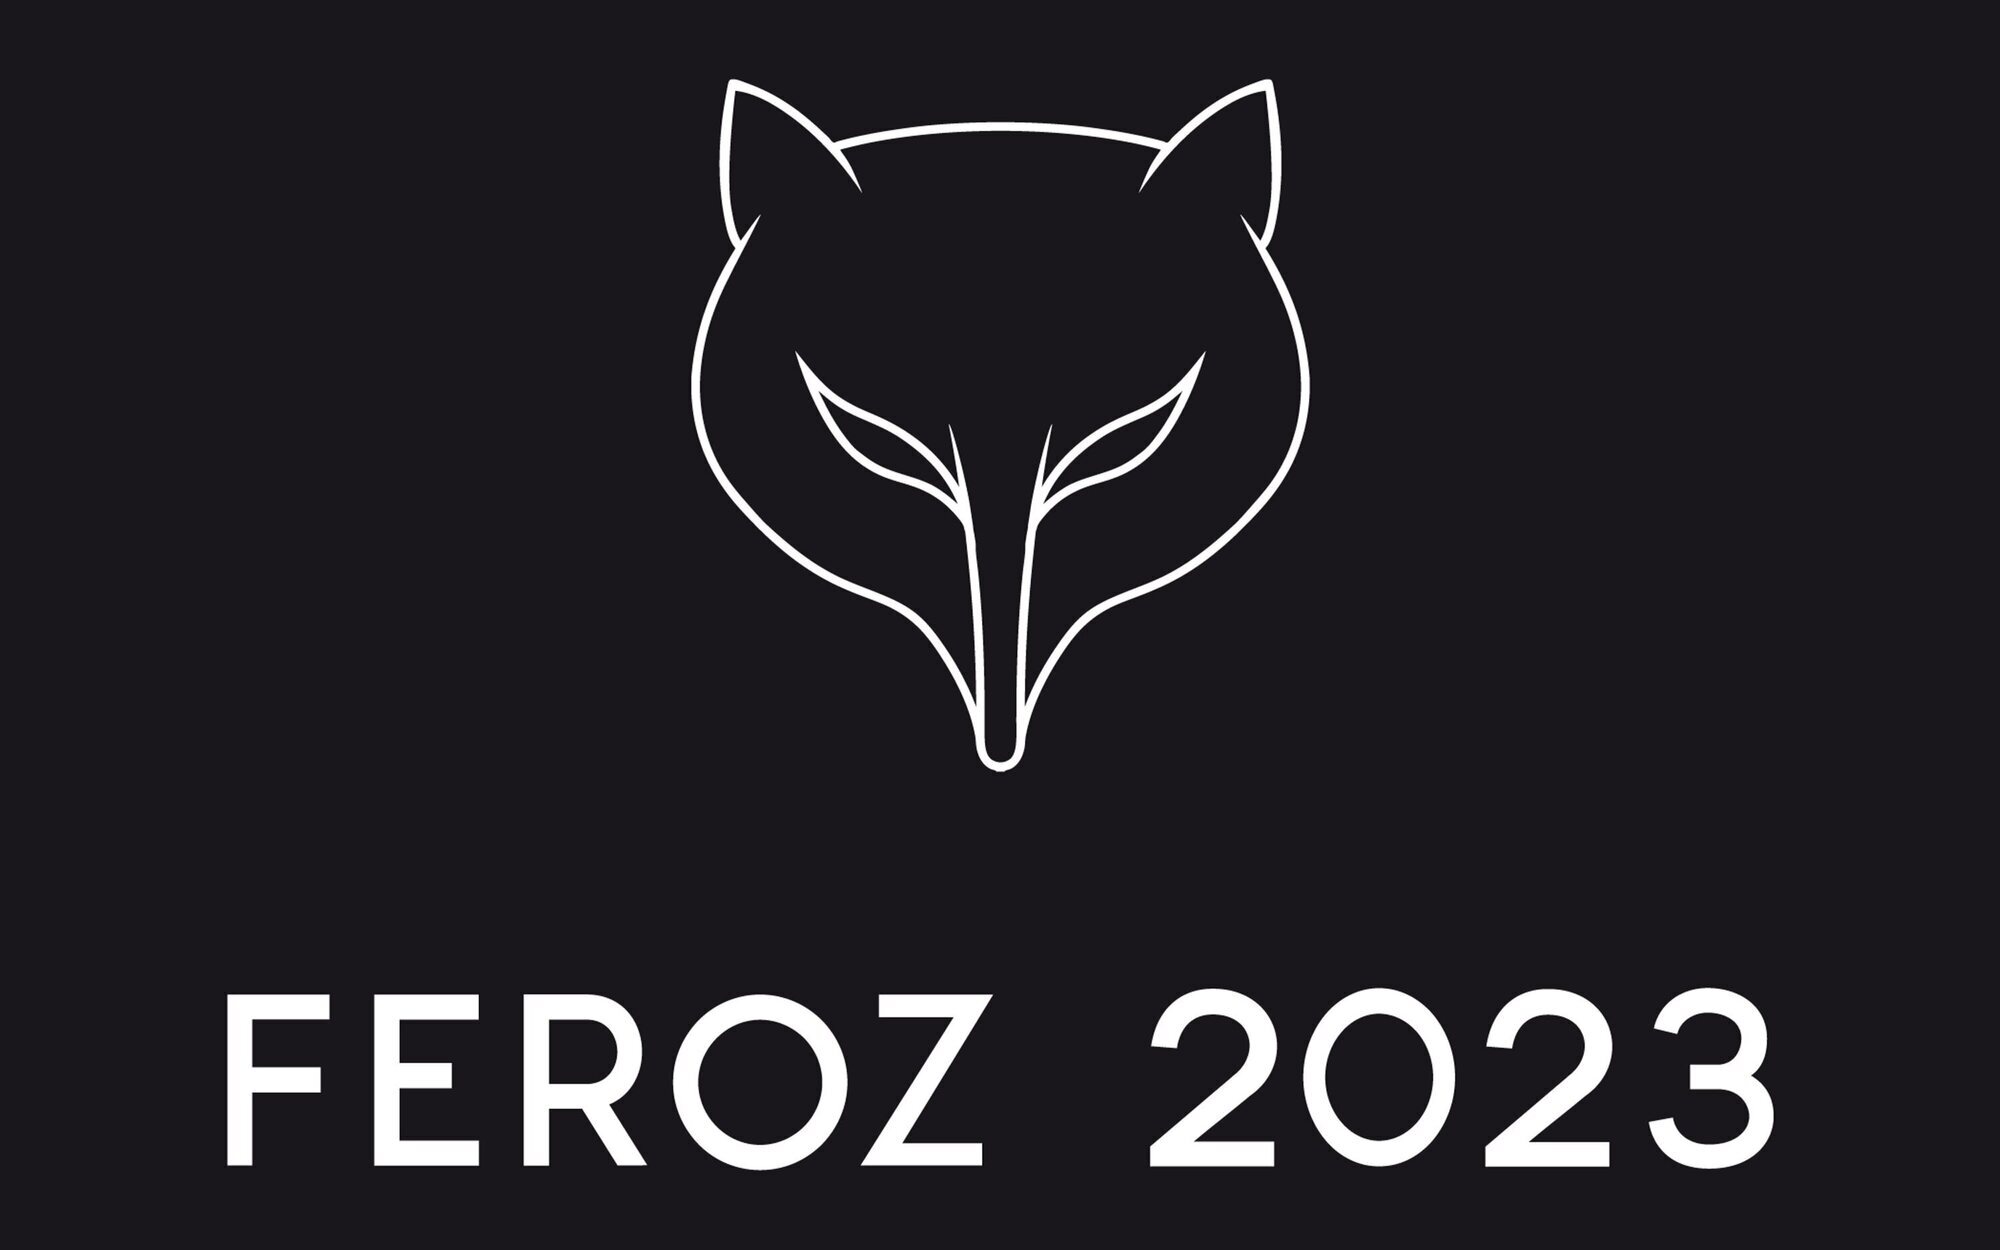 Lista completa de nominados a los Premios Feroz 2023